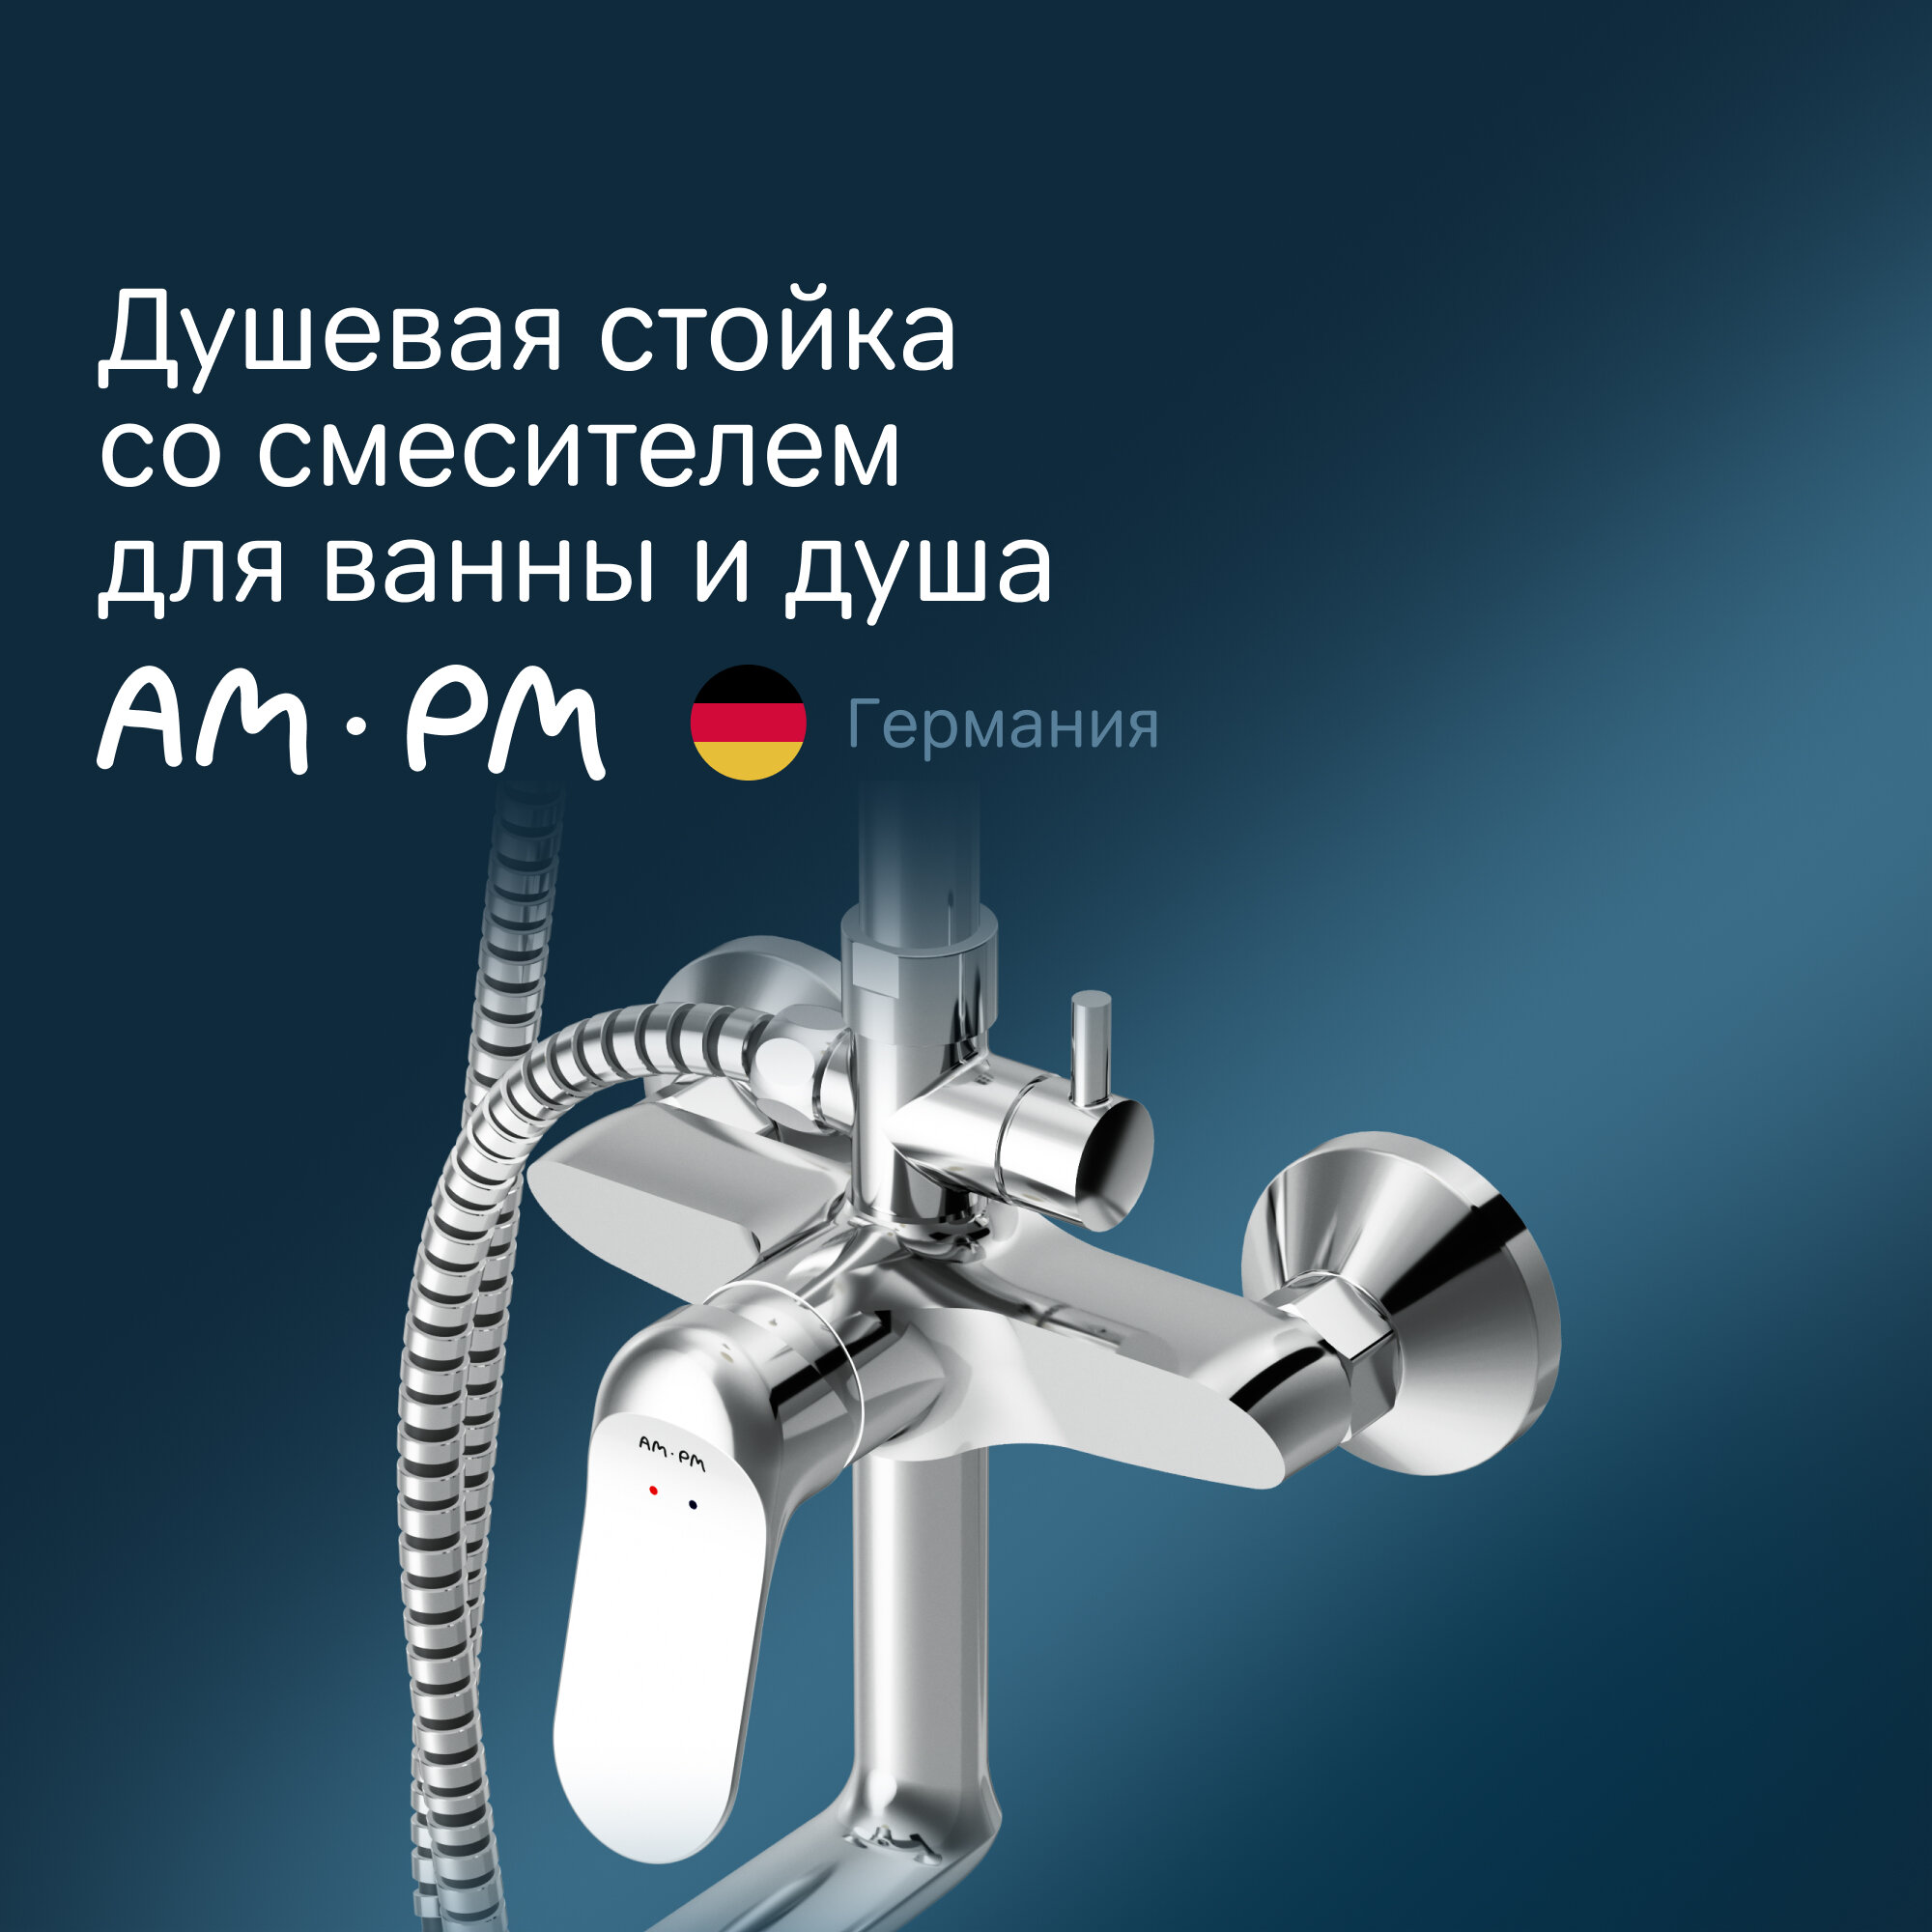 Душевая система со смесителем AM.PM Sunny F0785C900 верхний душ, ручной душ, хром